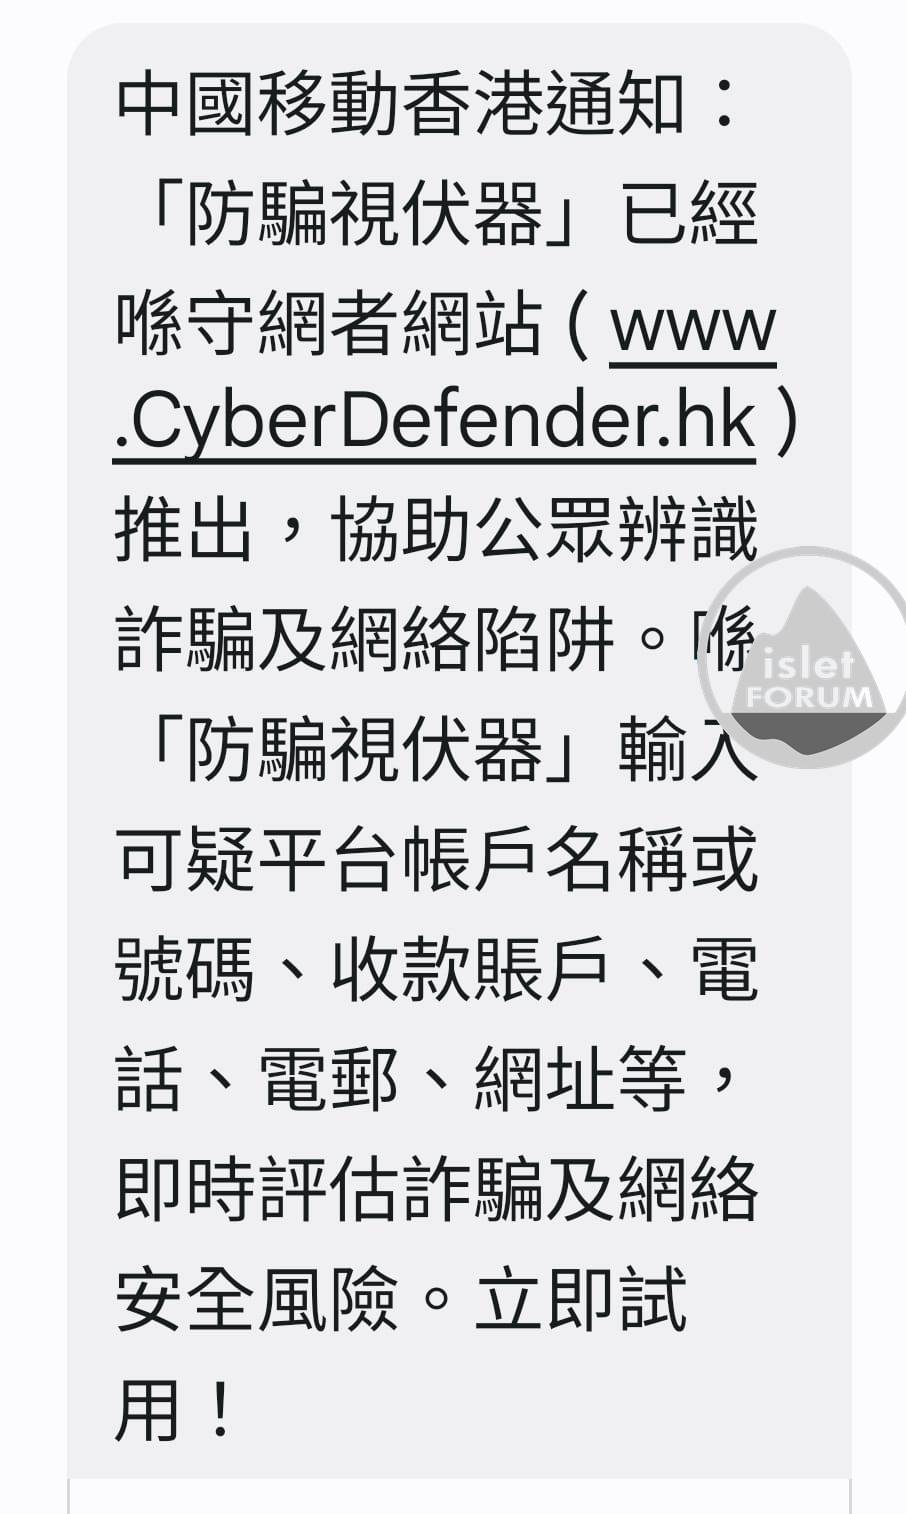 疑似詐騙／網絡陷阱？ 用「防騙視伏器」Check吓啦!Cyberdefender (1).jpeg